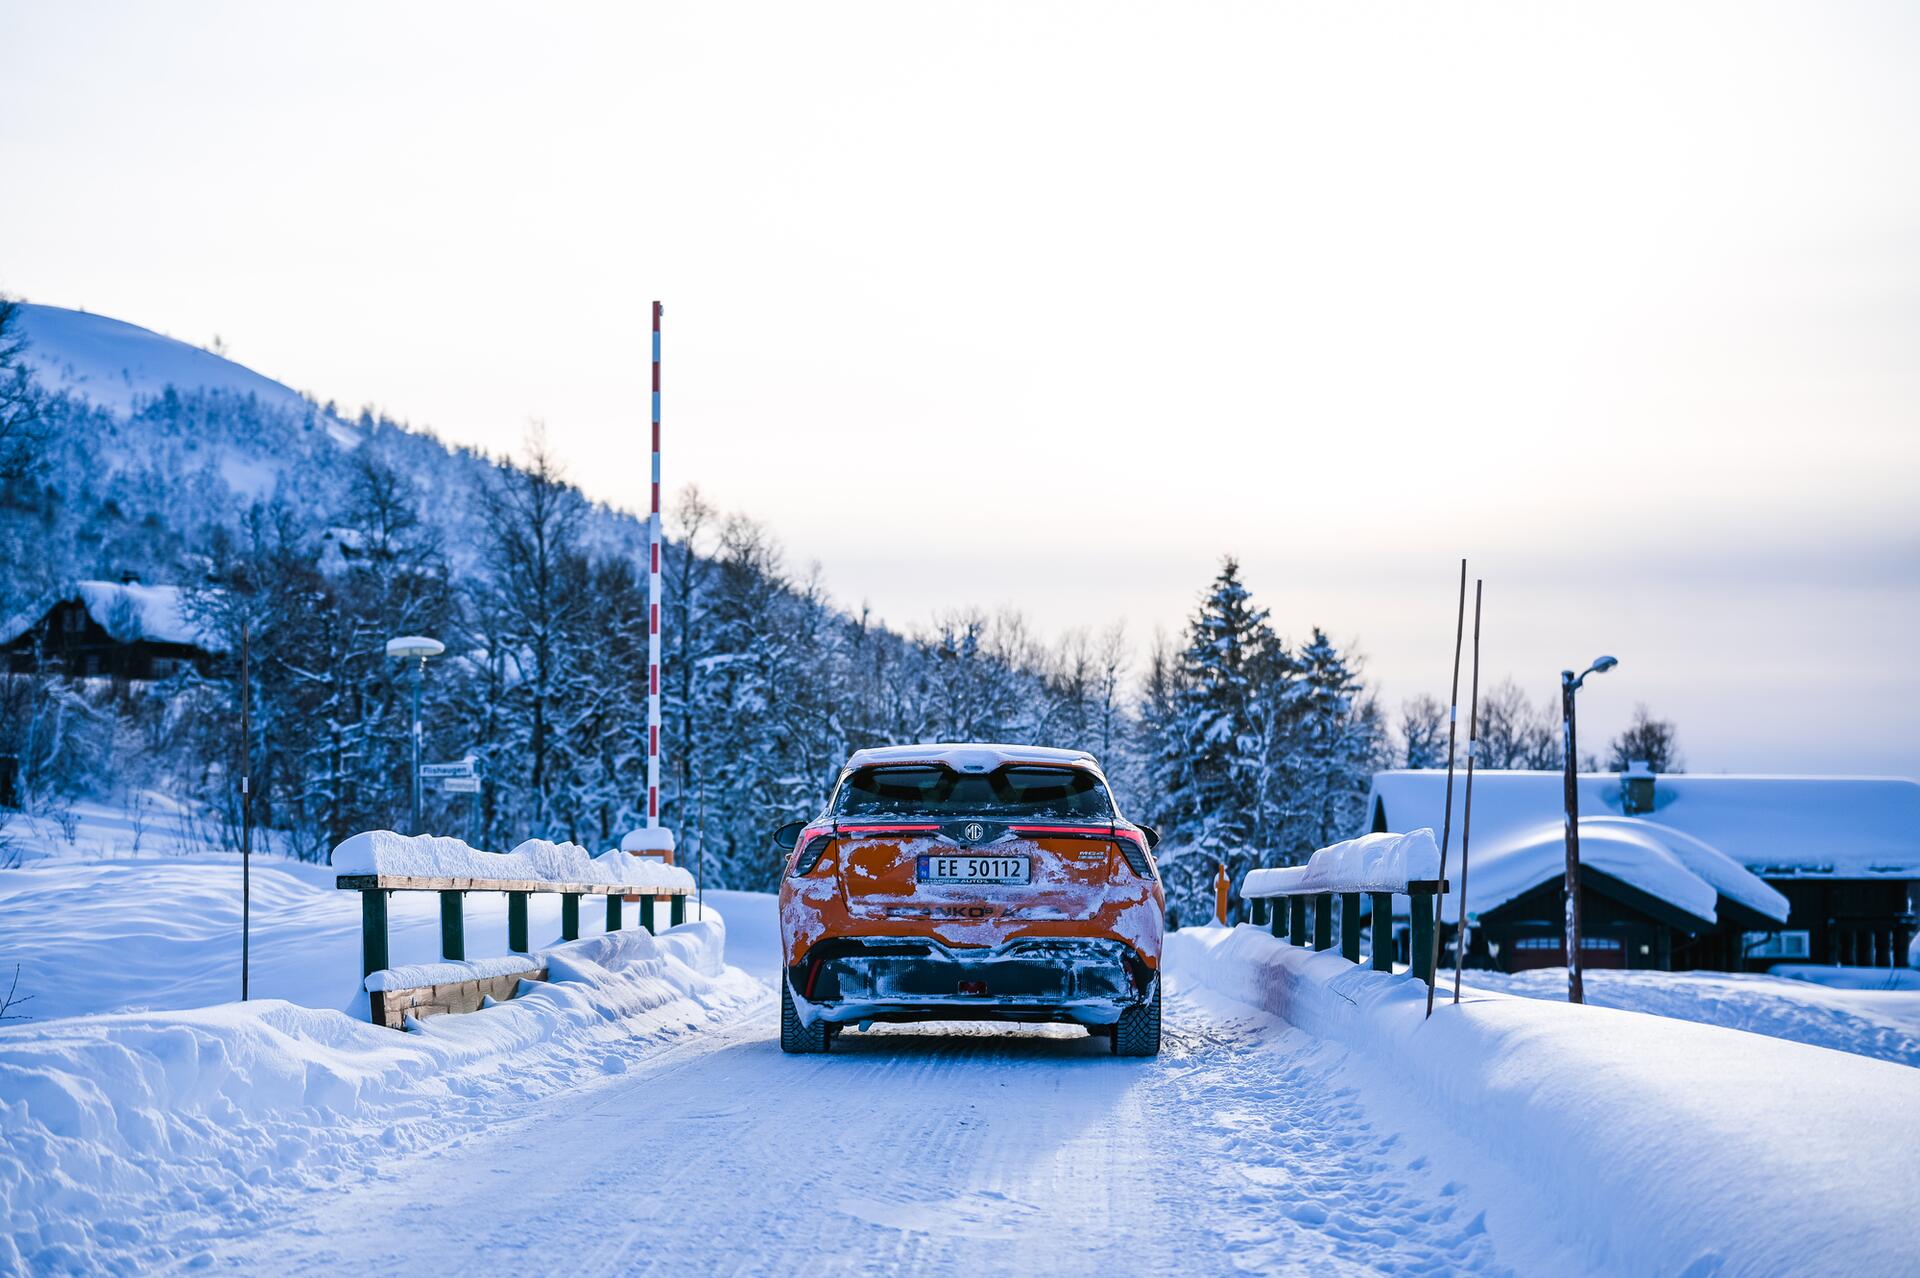 Jaké jsou nejčastější chyby, které dělají řidiči v zimním období?